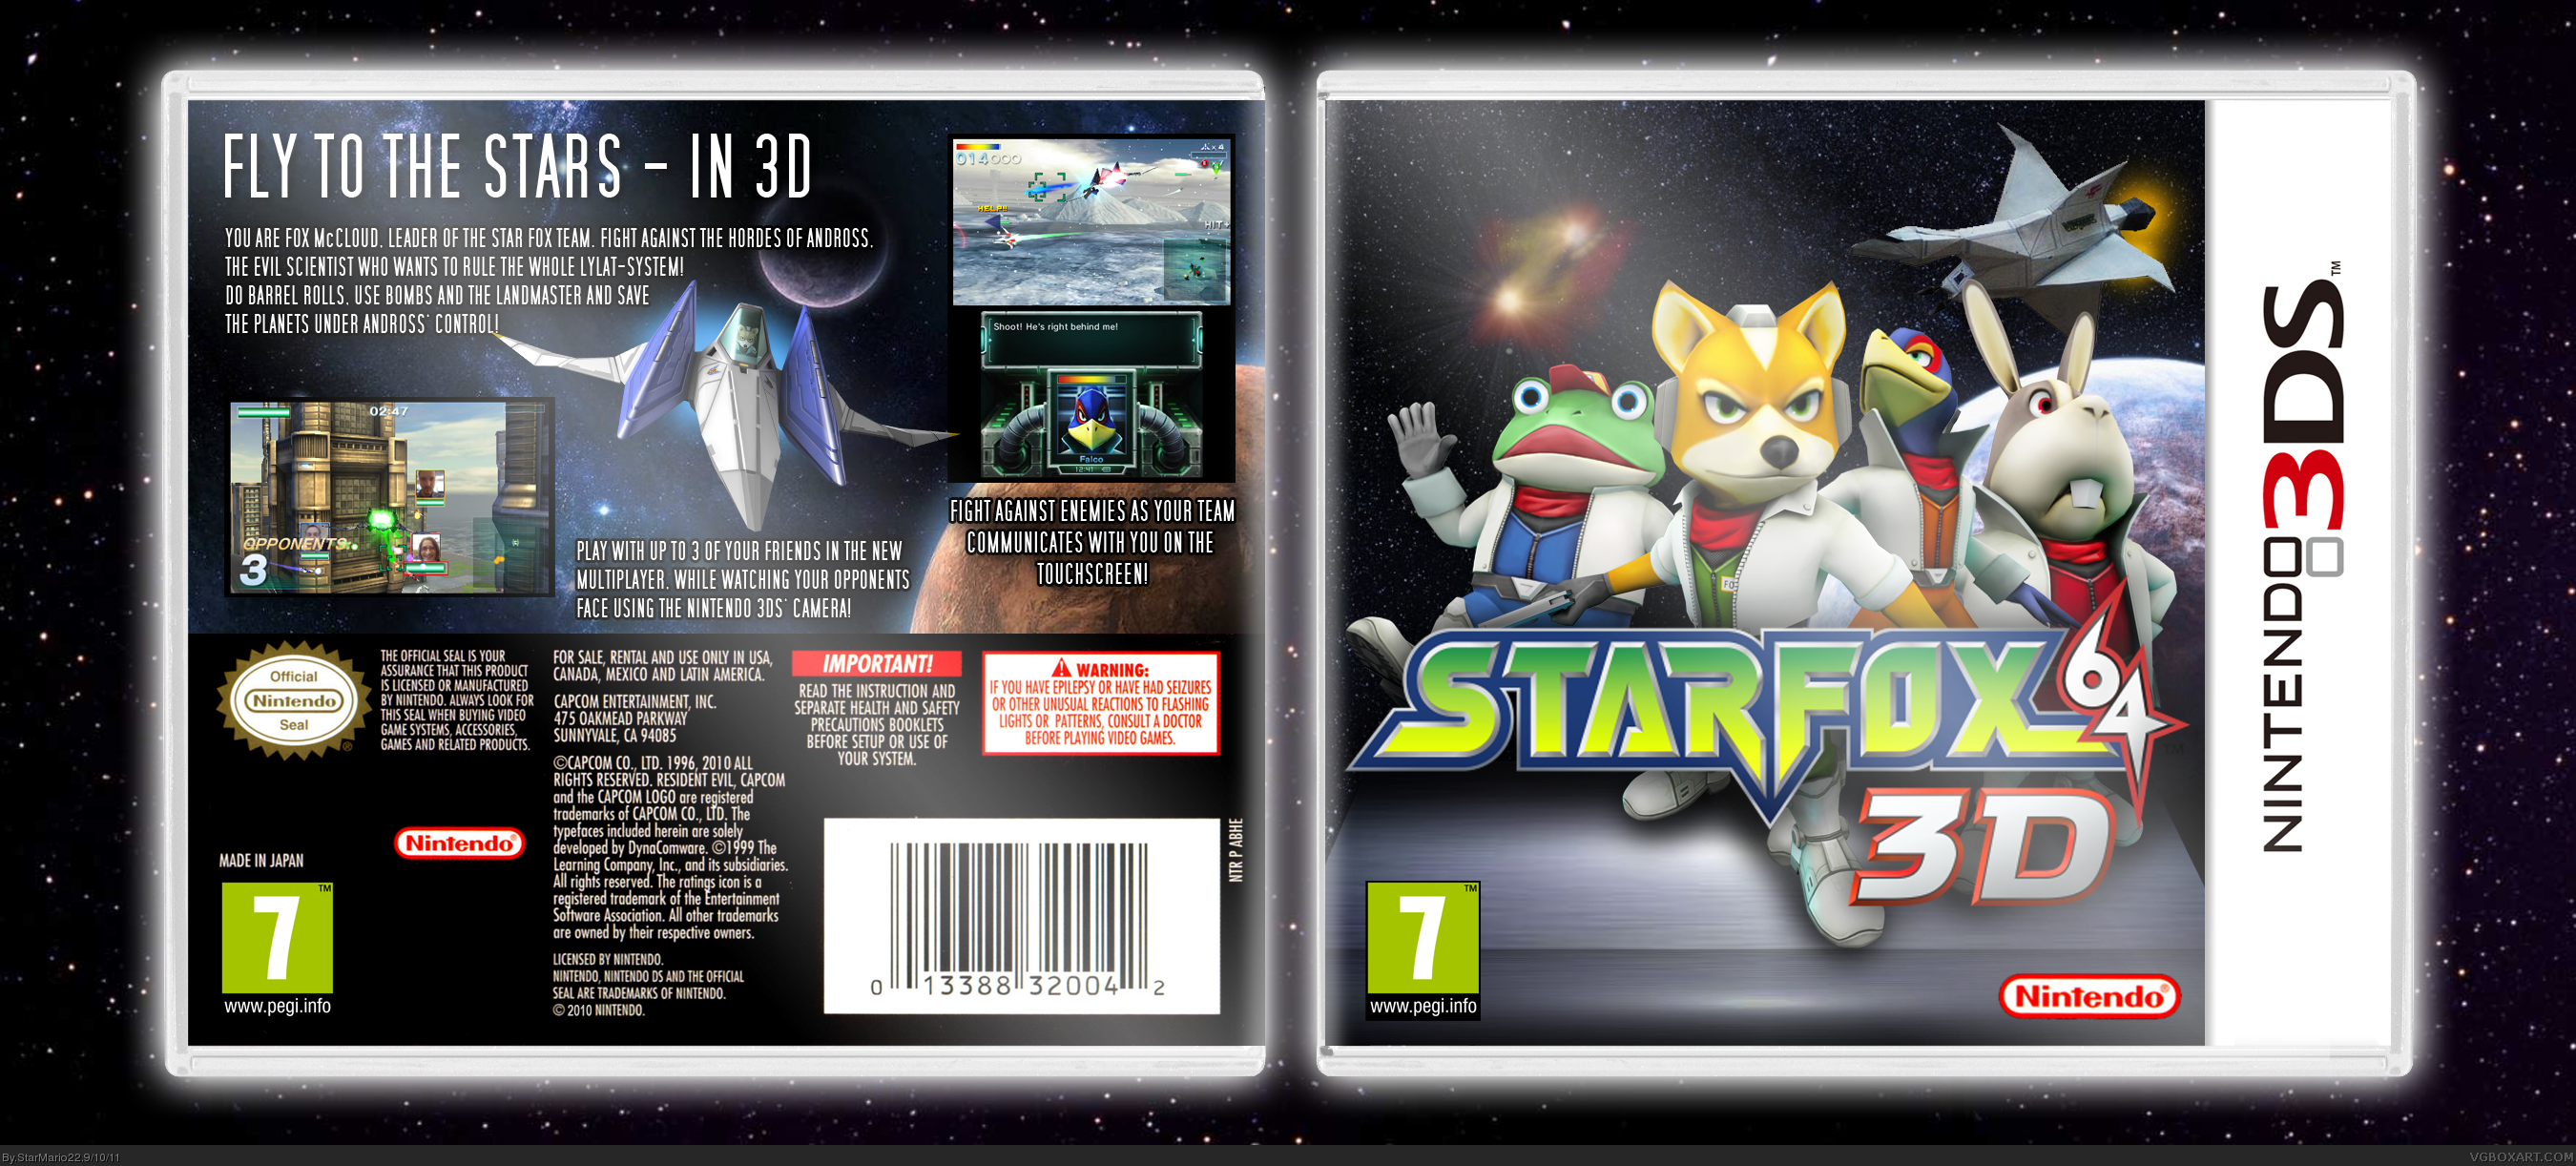 star fox 64 box